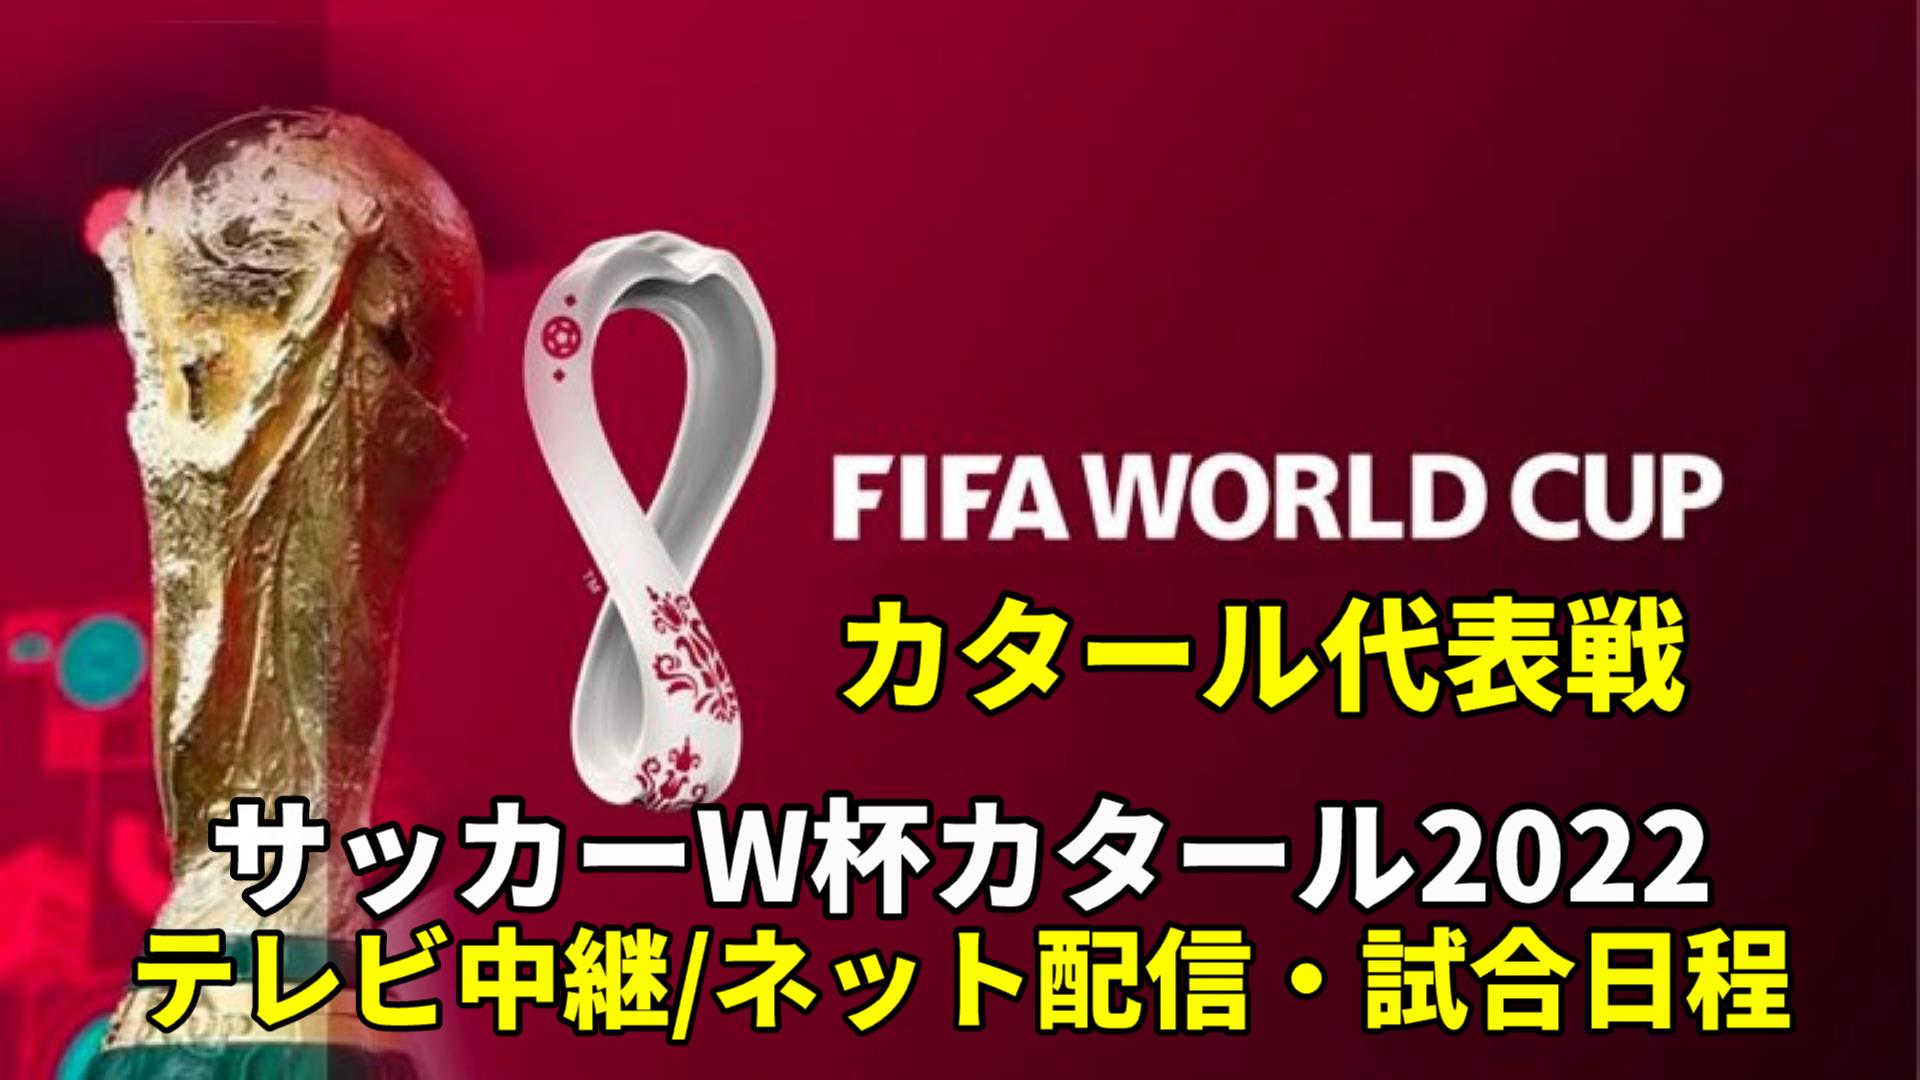 【カタール代表・ワールドカップ2022】 サッカー中継(テレビ放送/ネット配信)・試合予定